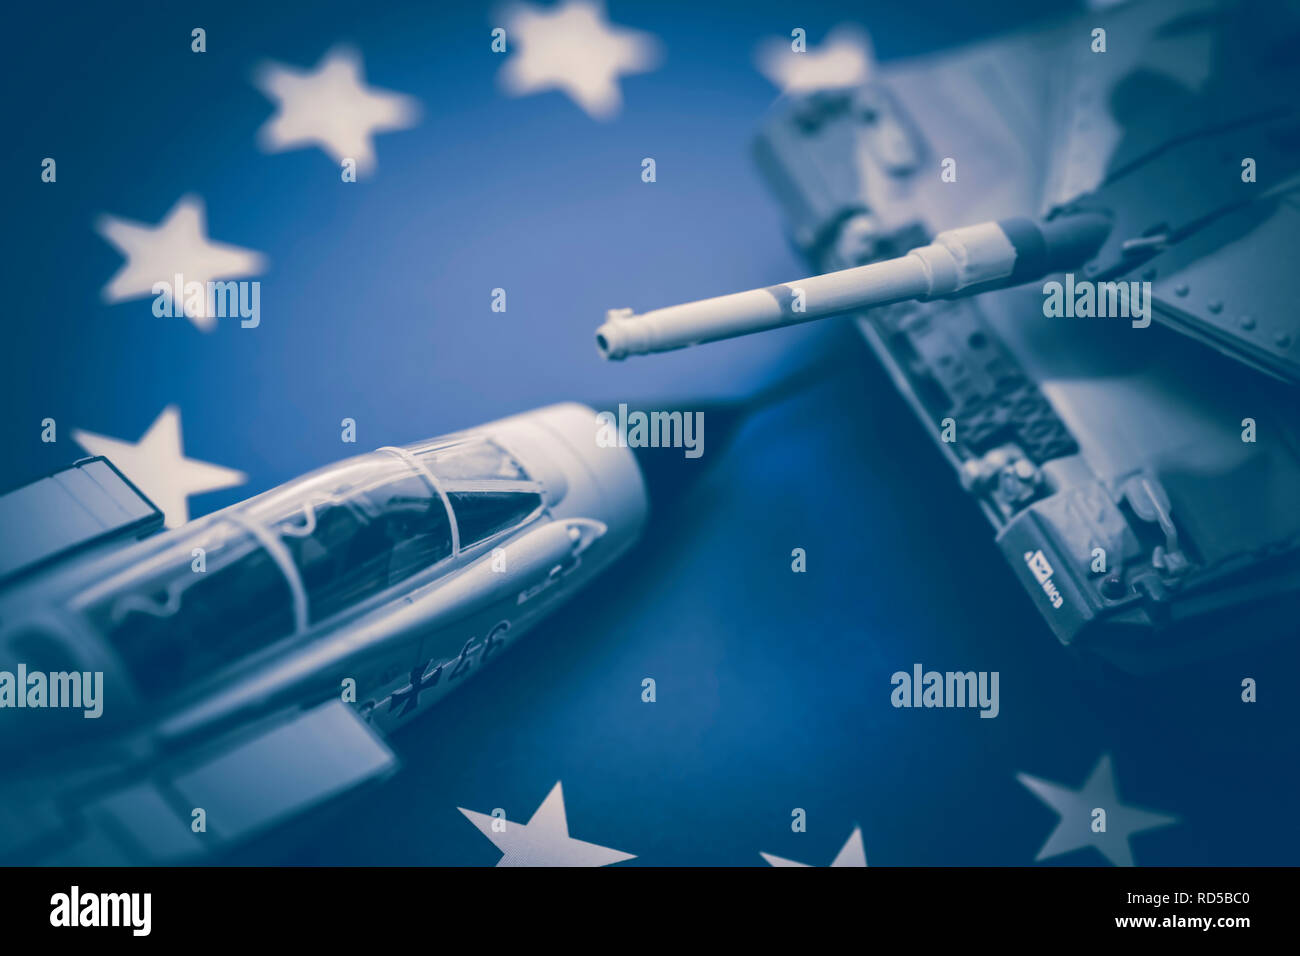 Serbatoio in miniatura e jet militare sulla bandiera UE, foto simbolico per un esercito europeo, Miniaturpanzer und Militärjet auf UE-Fahne, Symbolfoto für eine europä Foto Stock